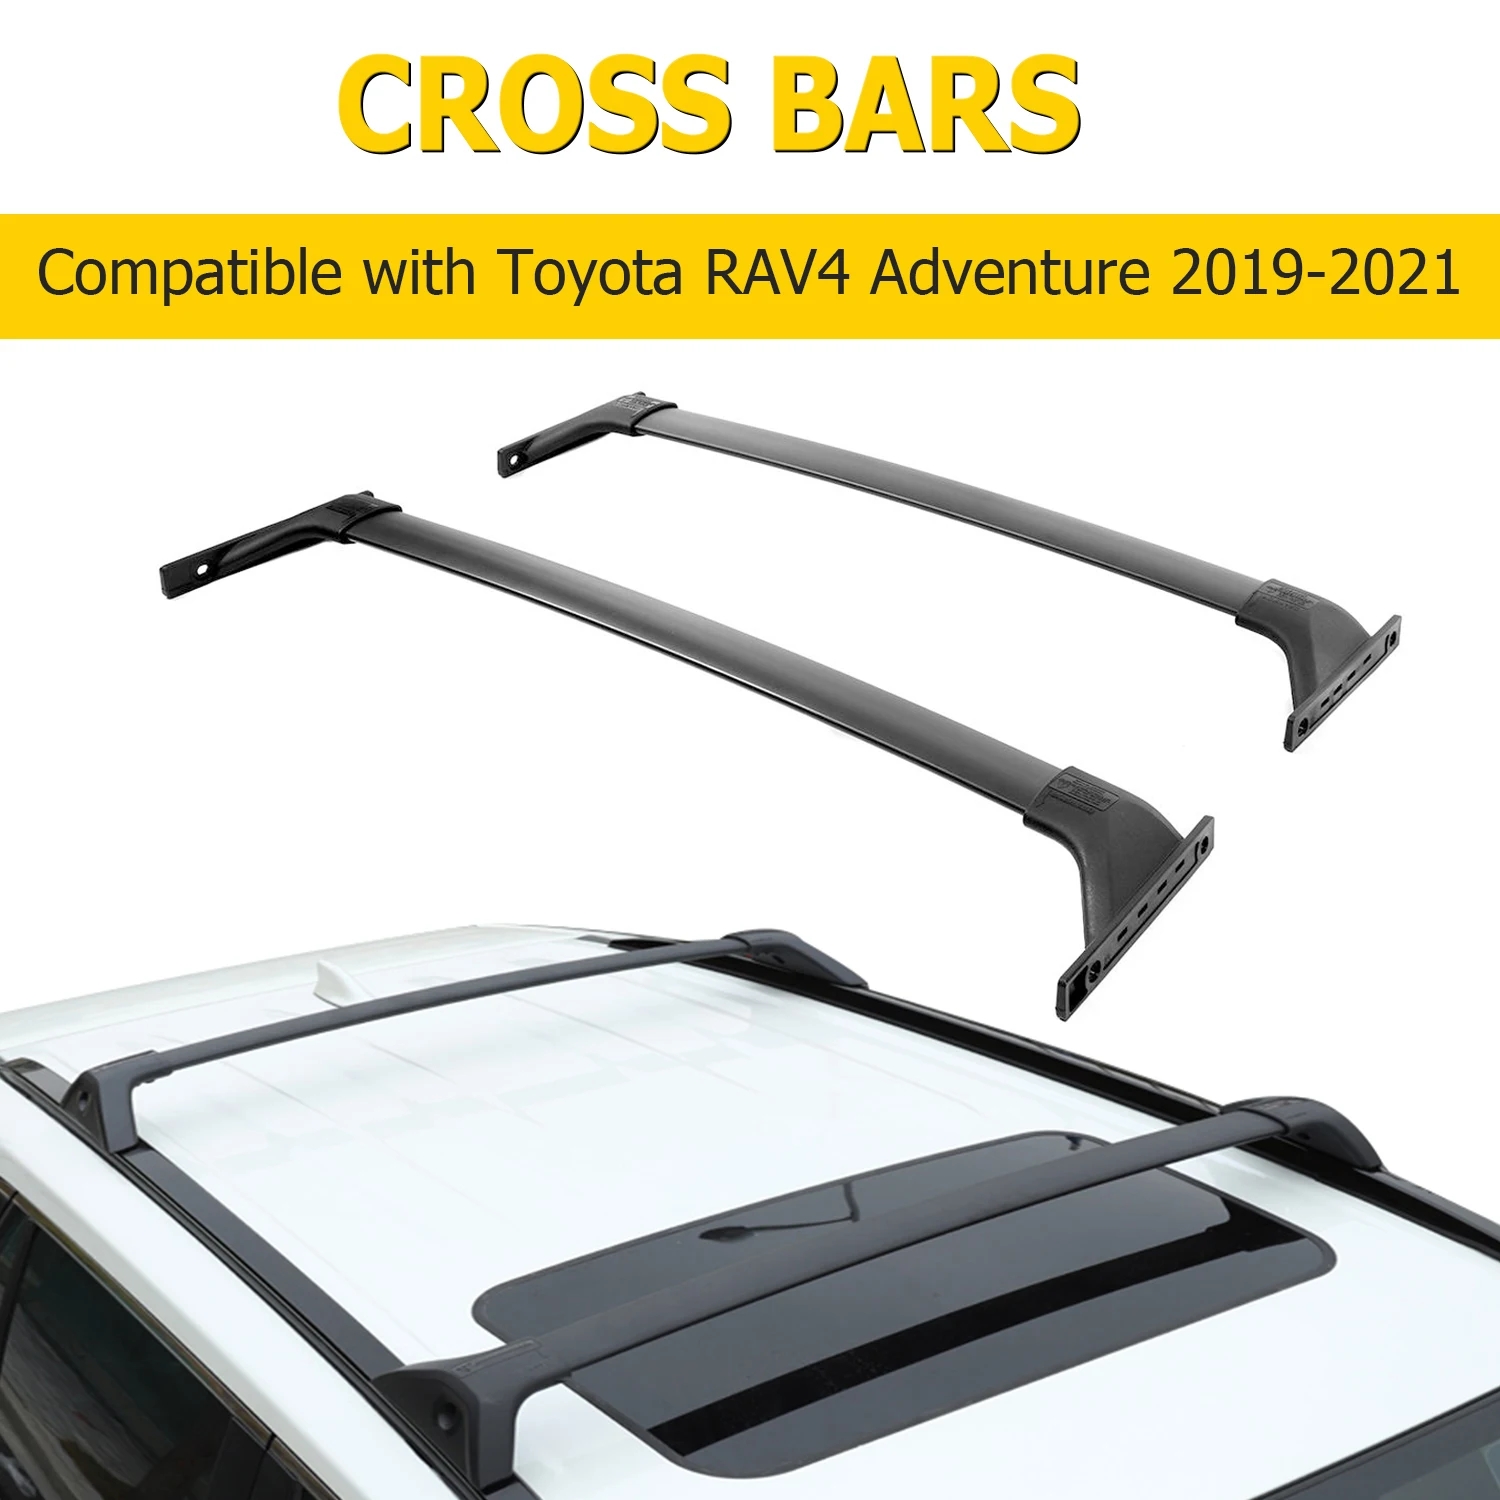 

Car Roof Rack for TOYOTA RAV4 Adventure 2019-2022 Aluminum Alloy Luggage Carrier Kayaks Bike Canoes Roof Cross Bars Rack Holder